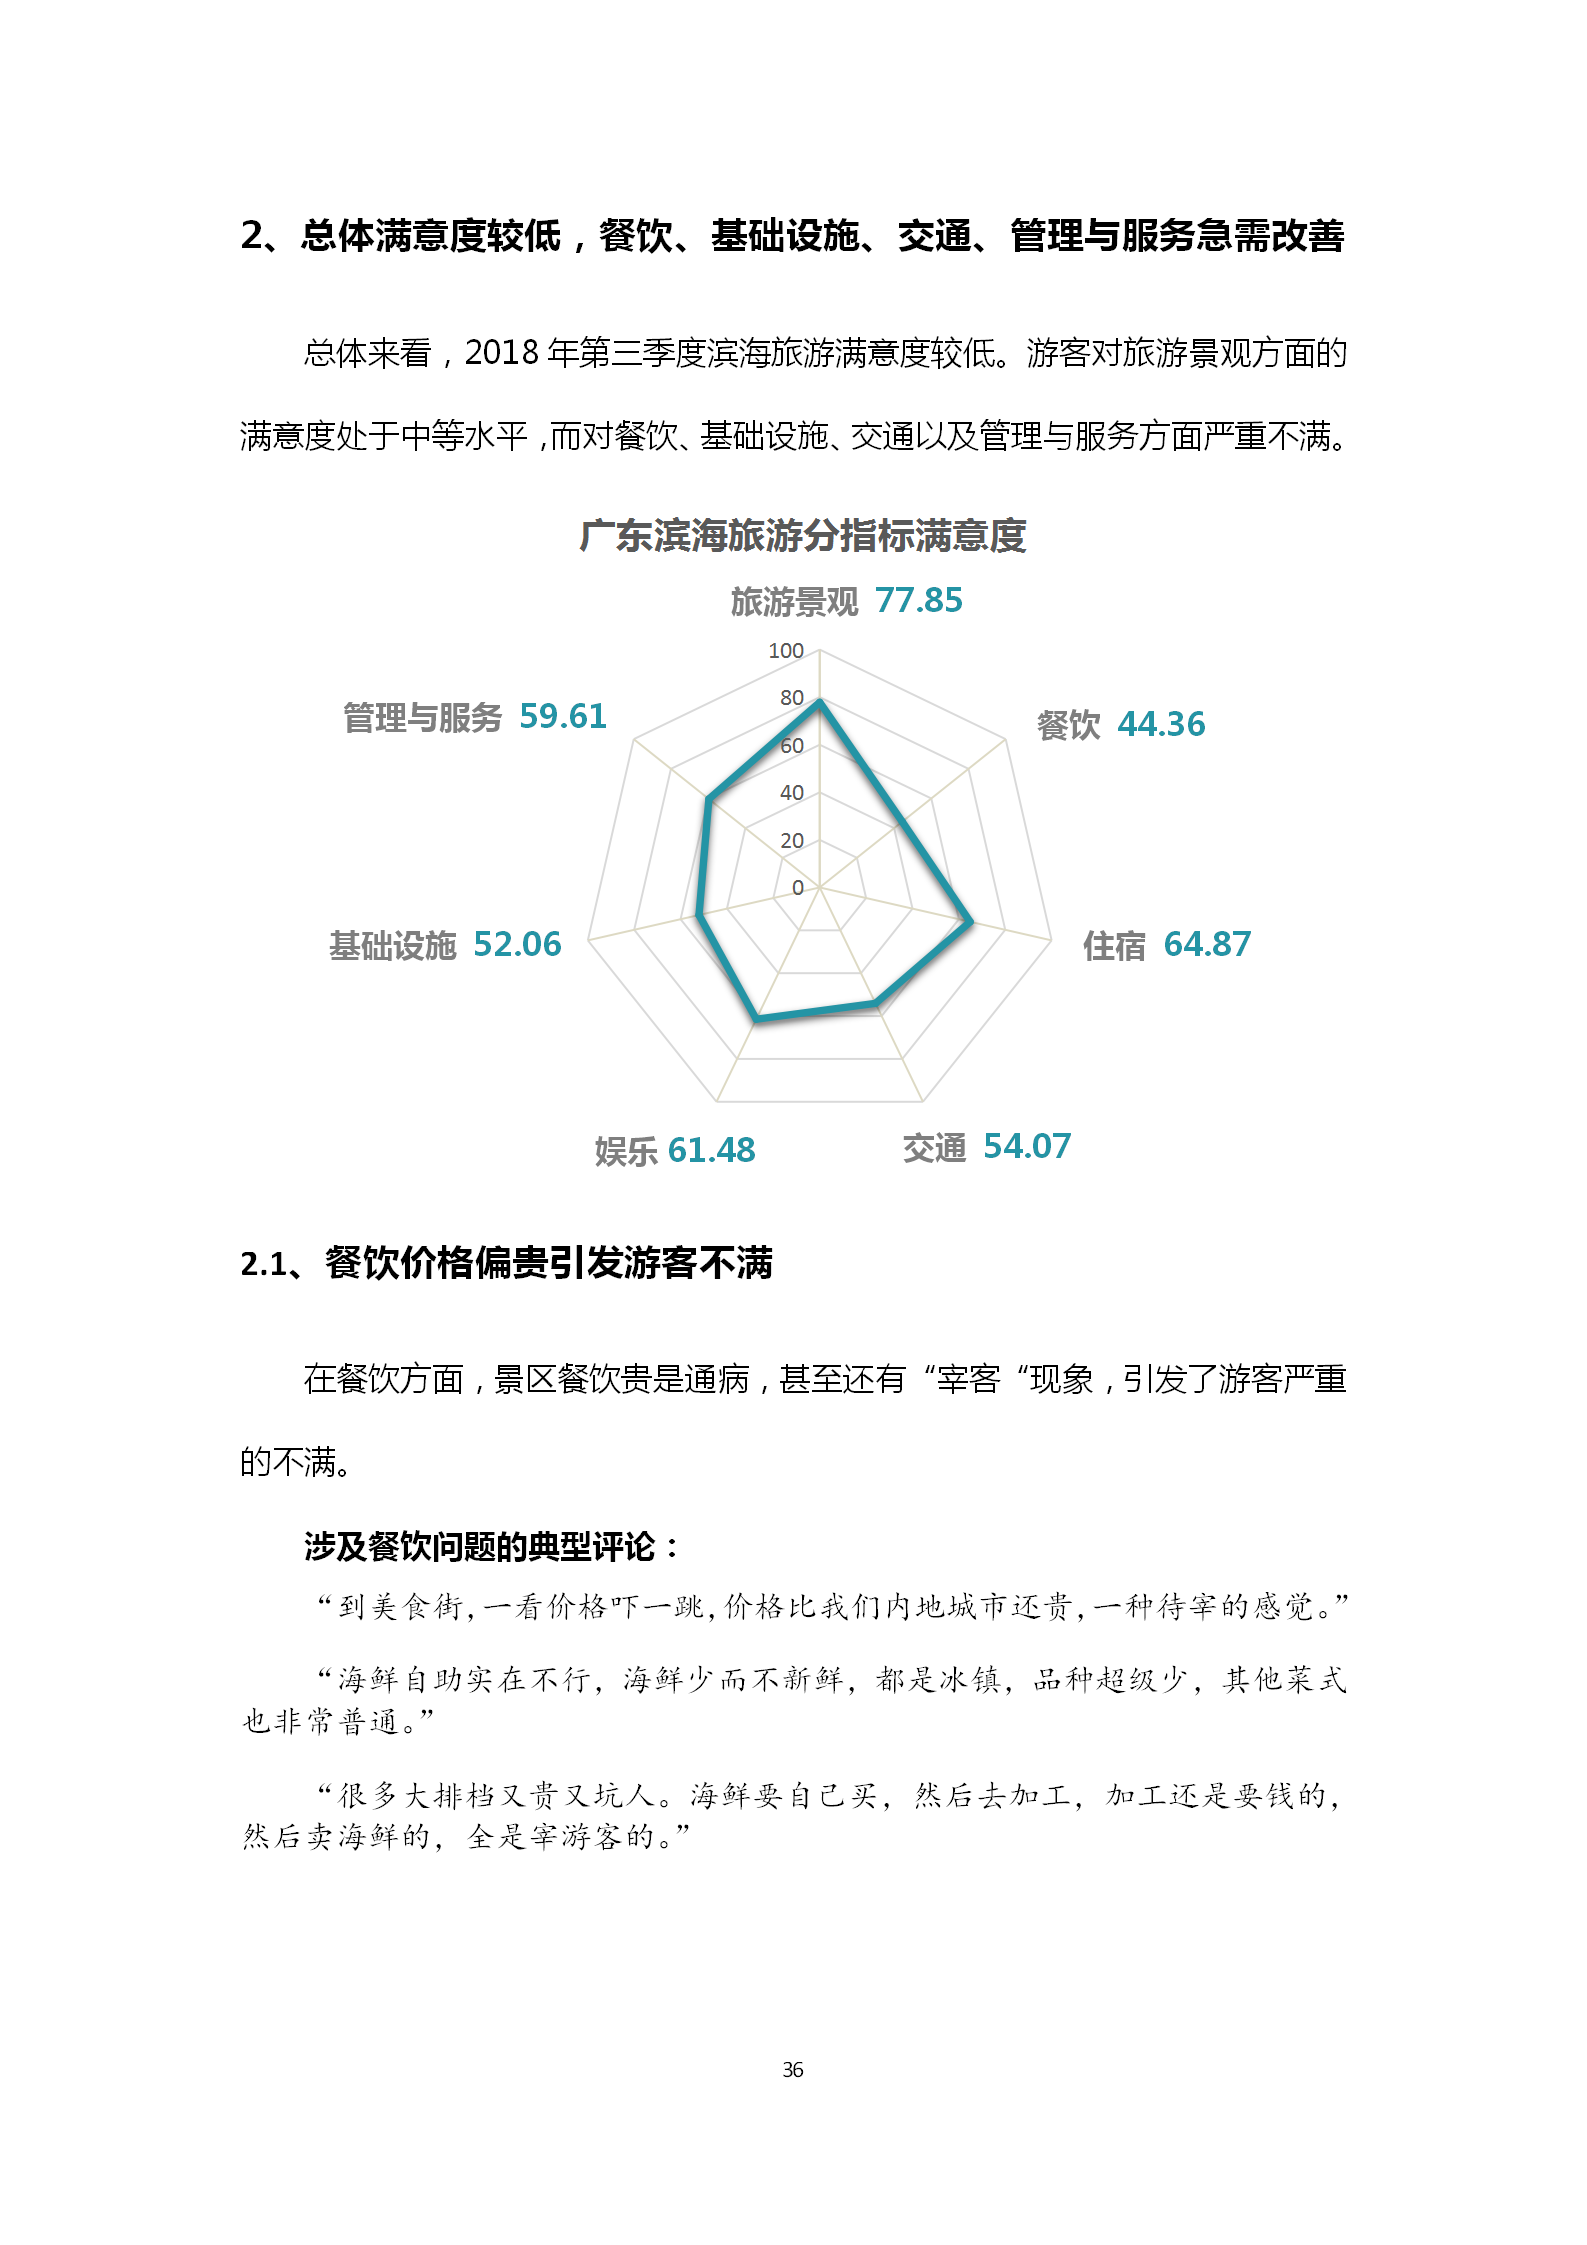 广东省旅游景区游客满意度大数据调查报告-2018年第三季度20181106_37